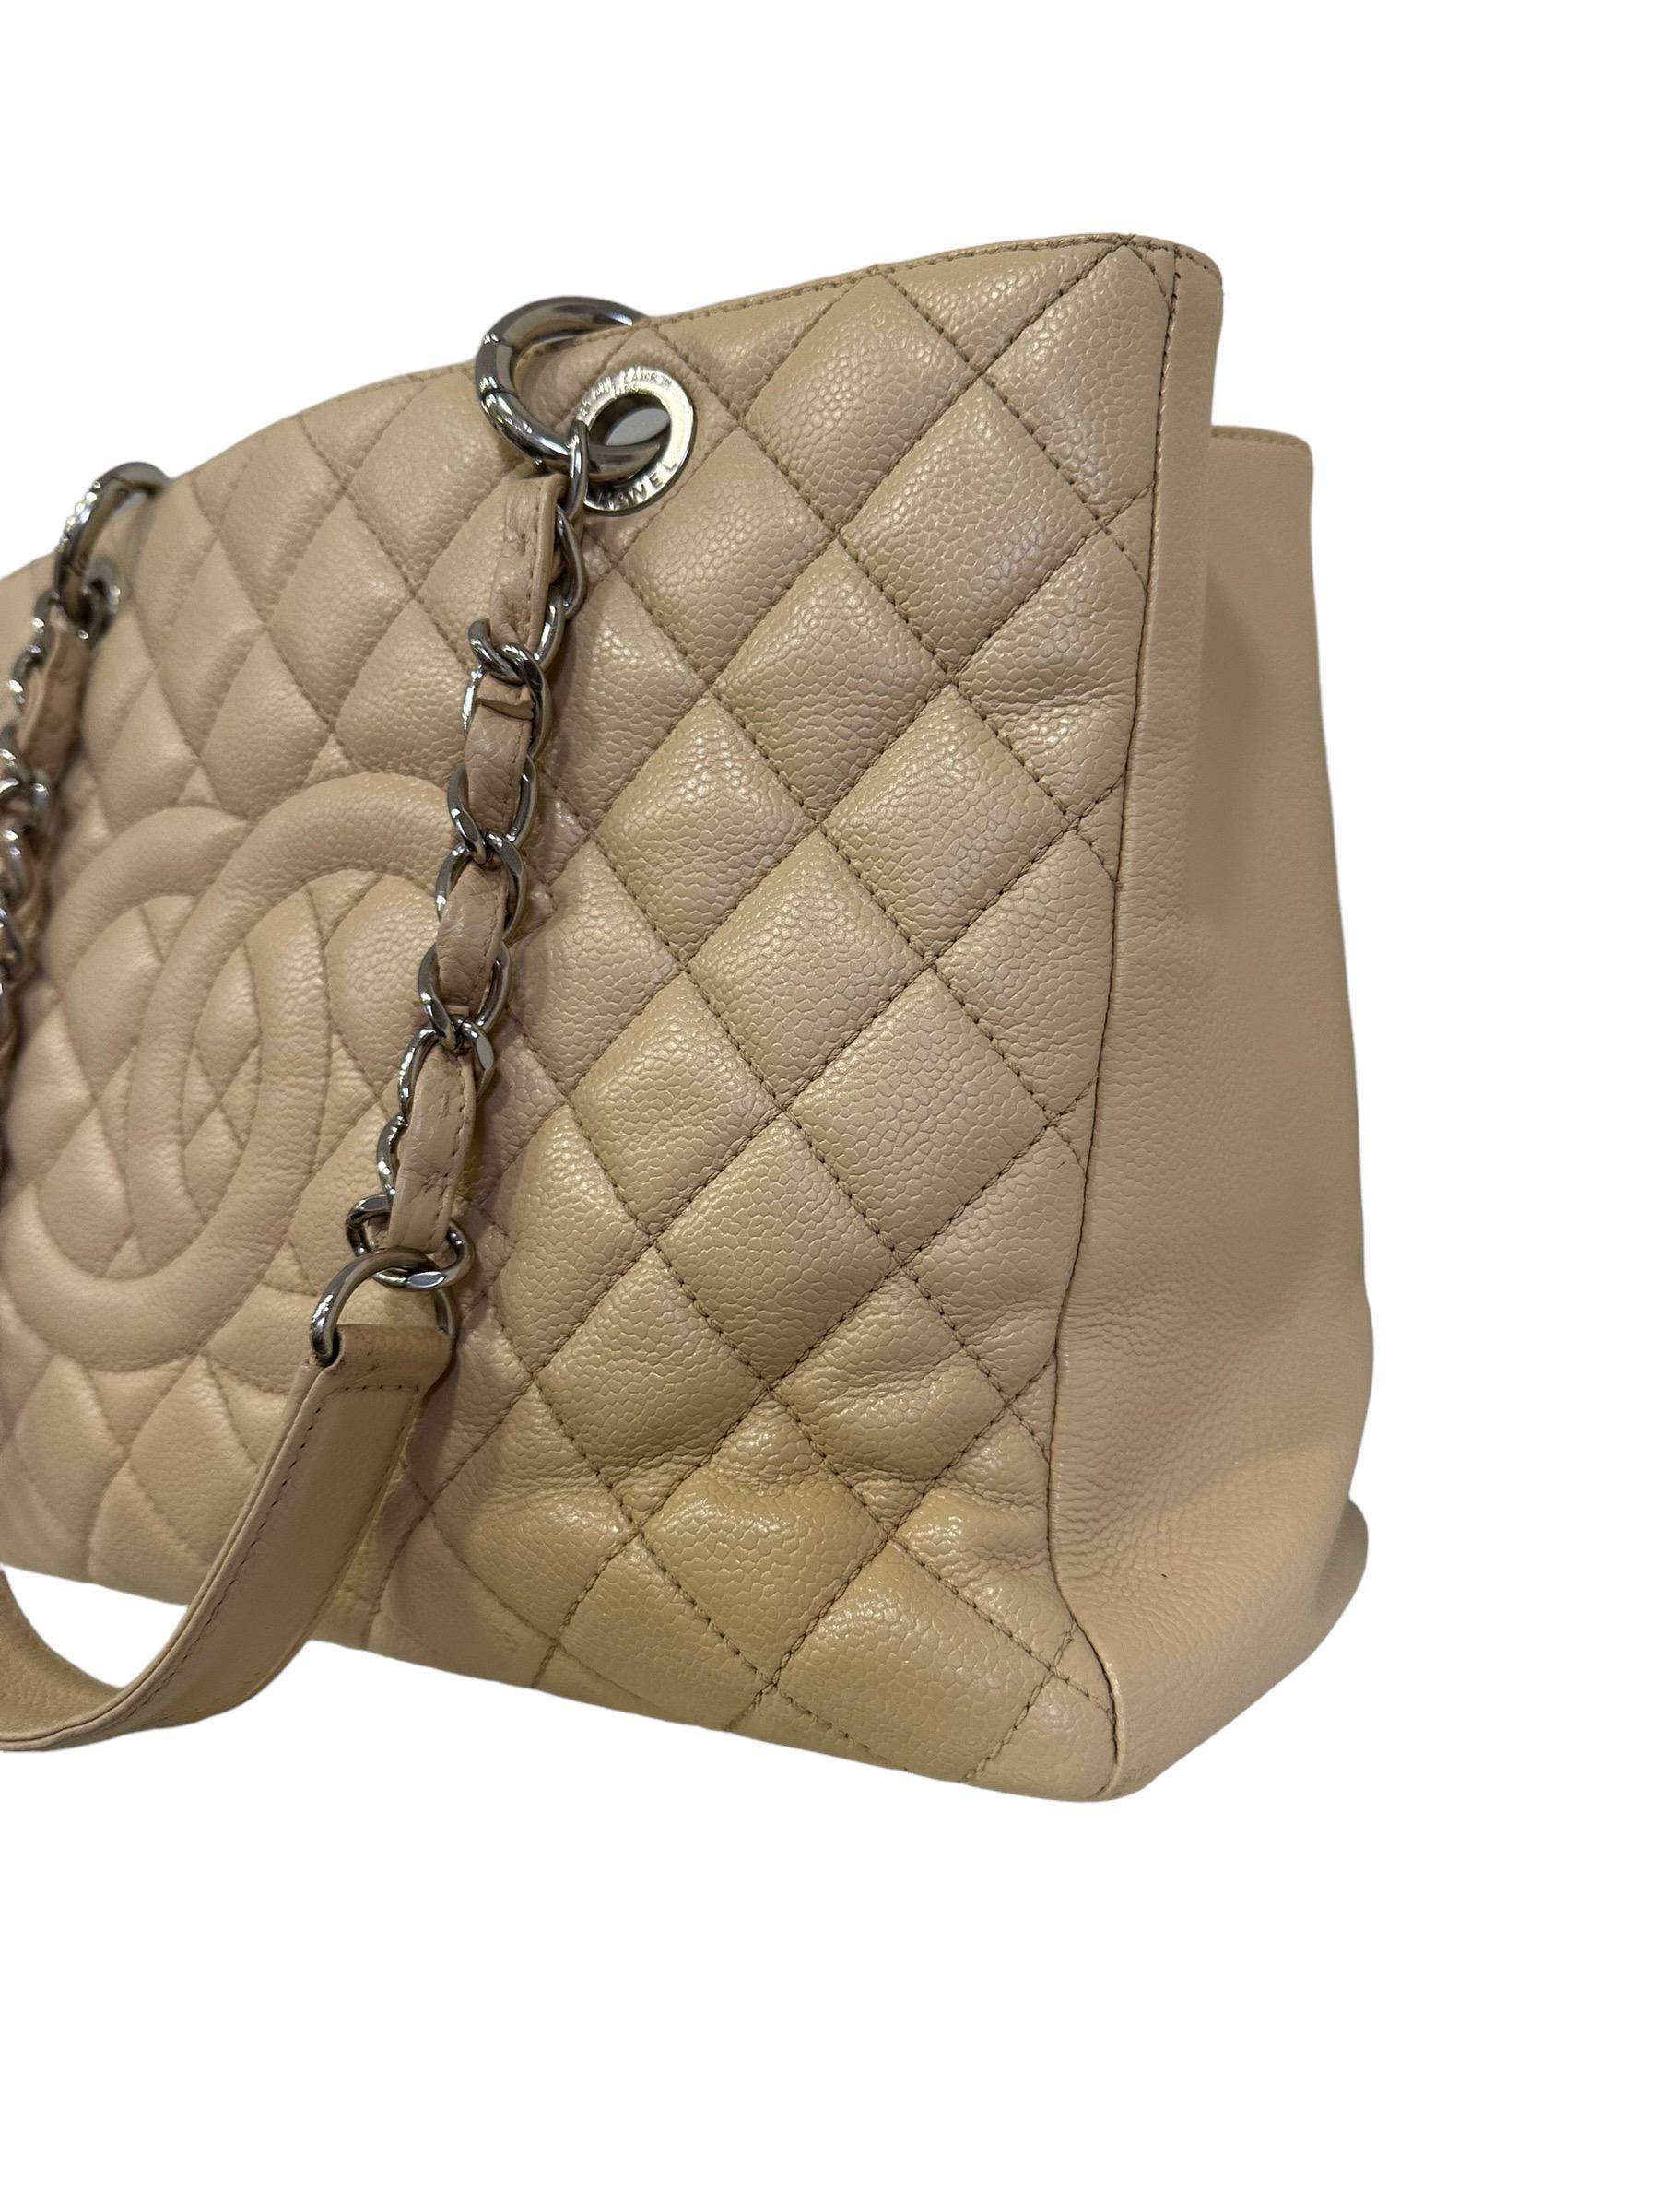 Women's 2014 Chanel Beige Leather GST Shoulder Bag For Sale